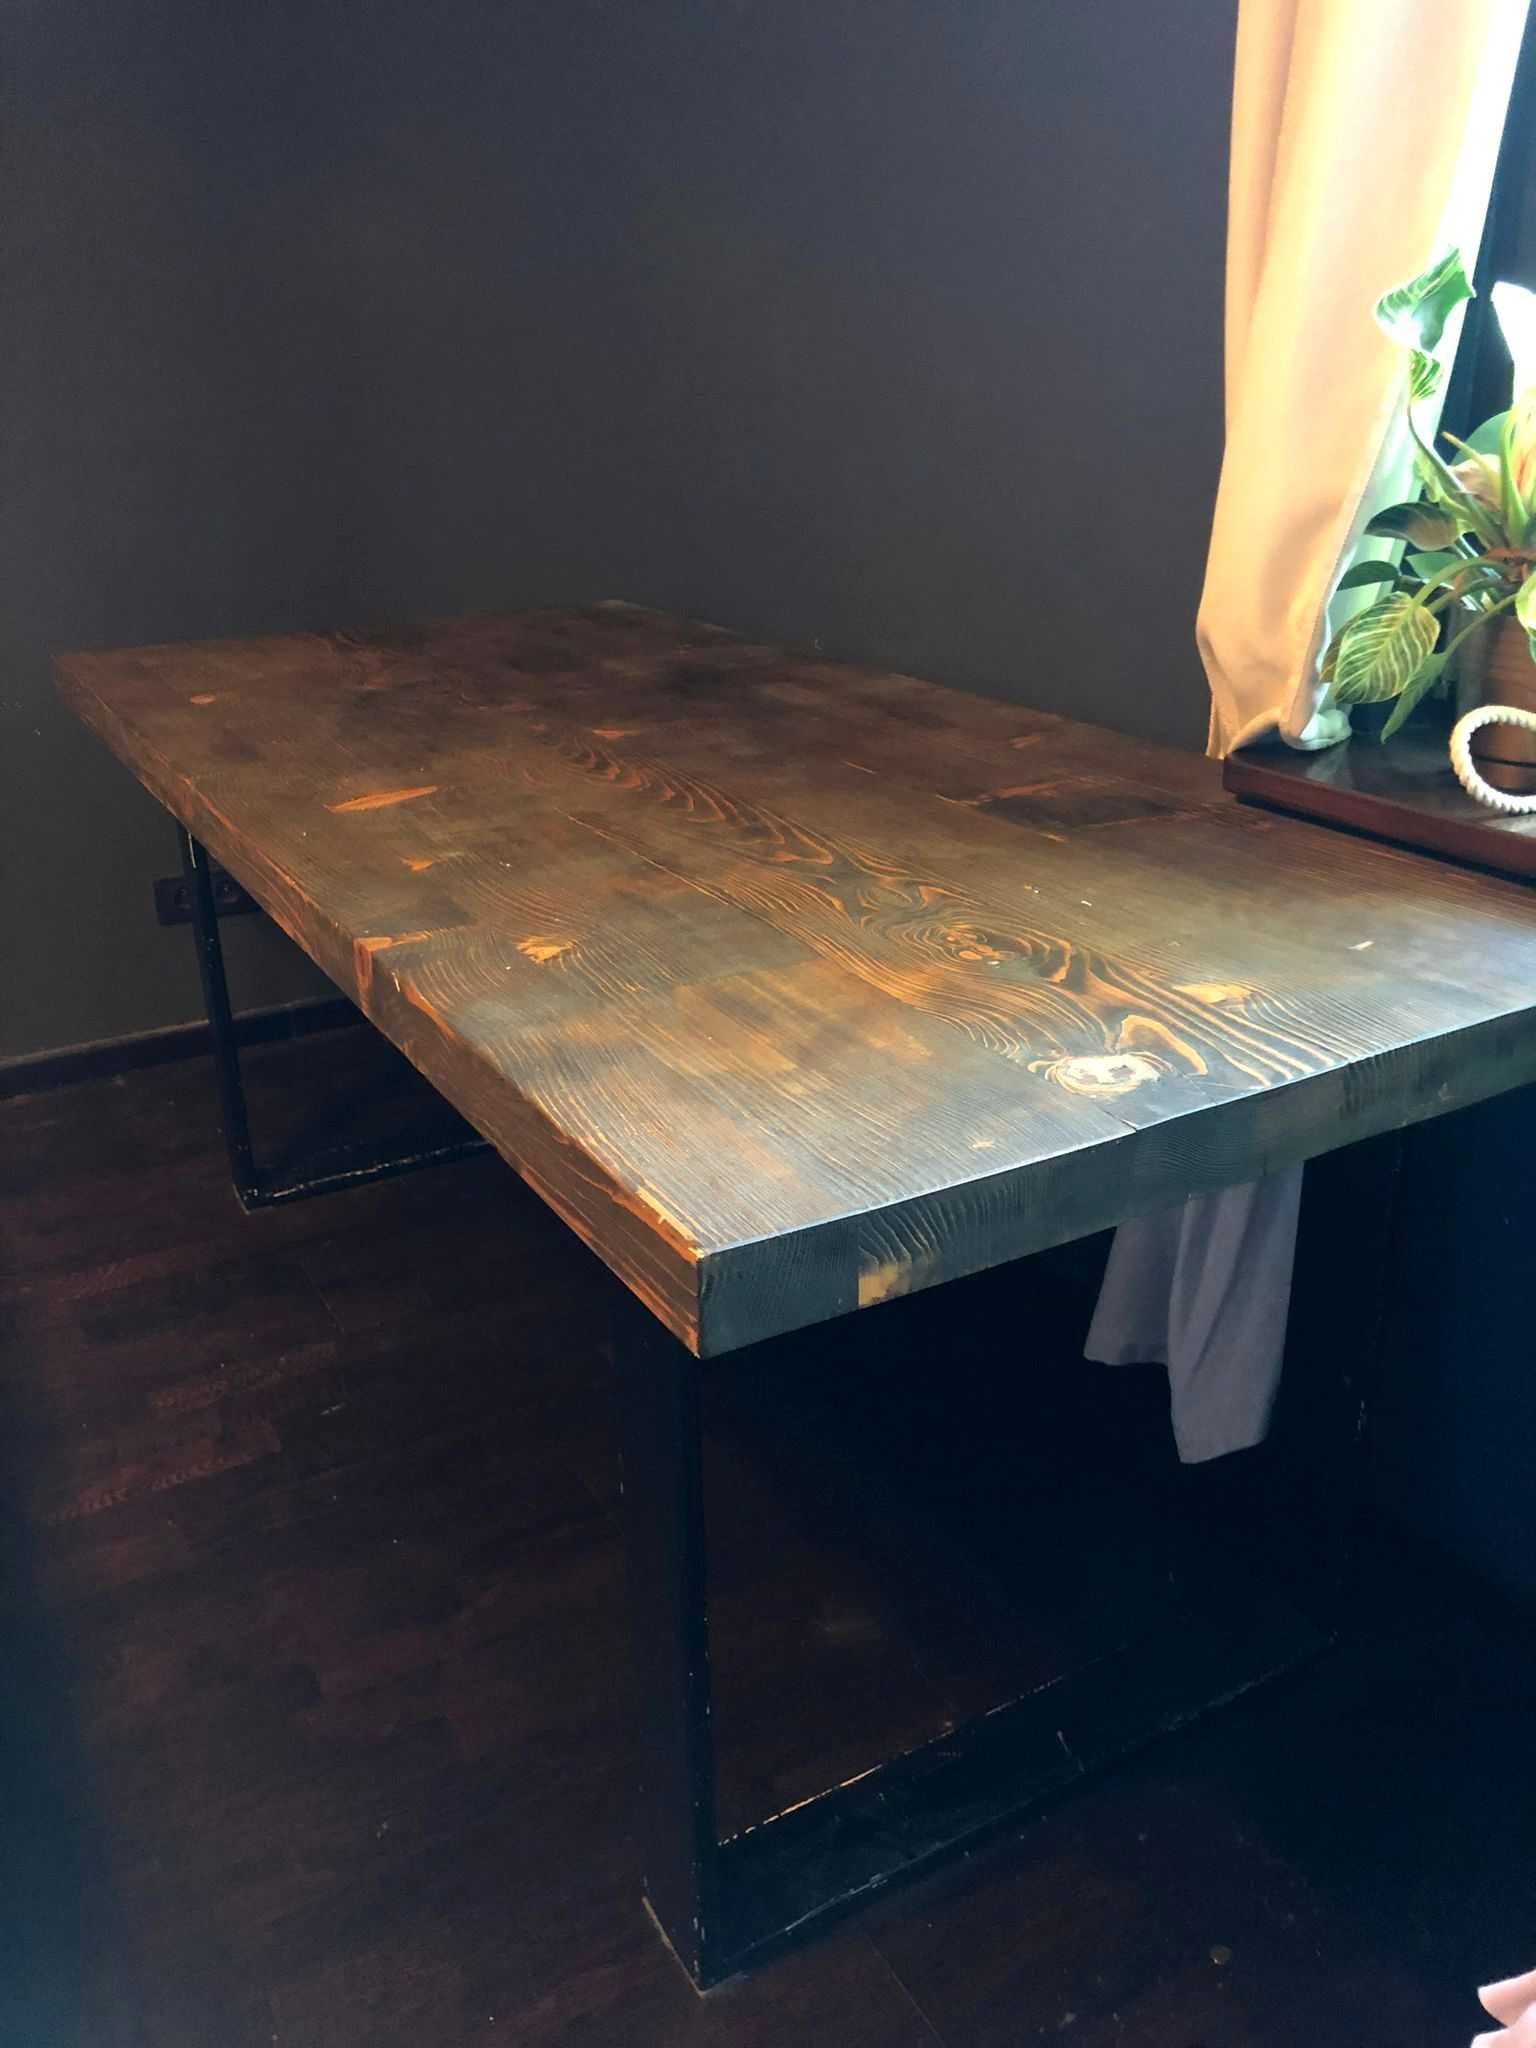 Loftowy masywny stół z drewnianym blatem